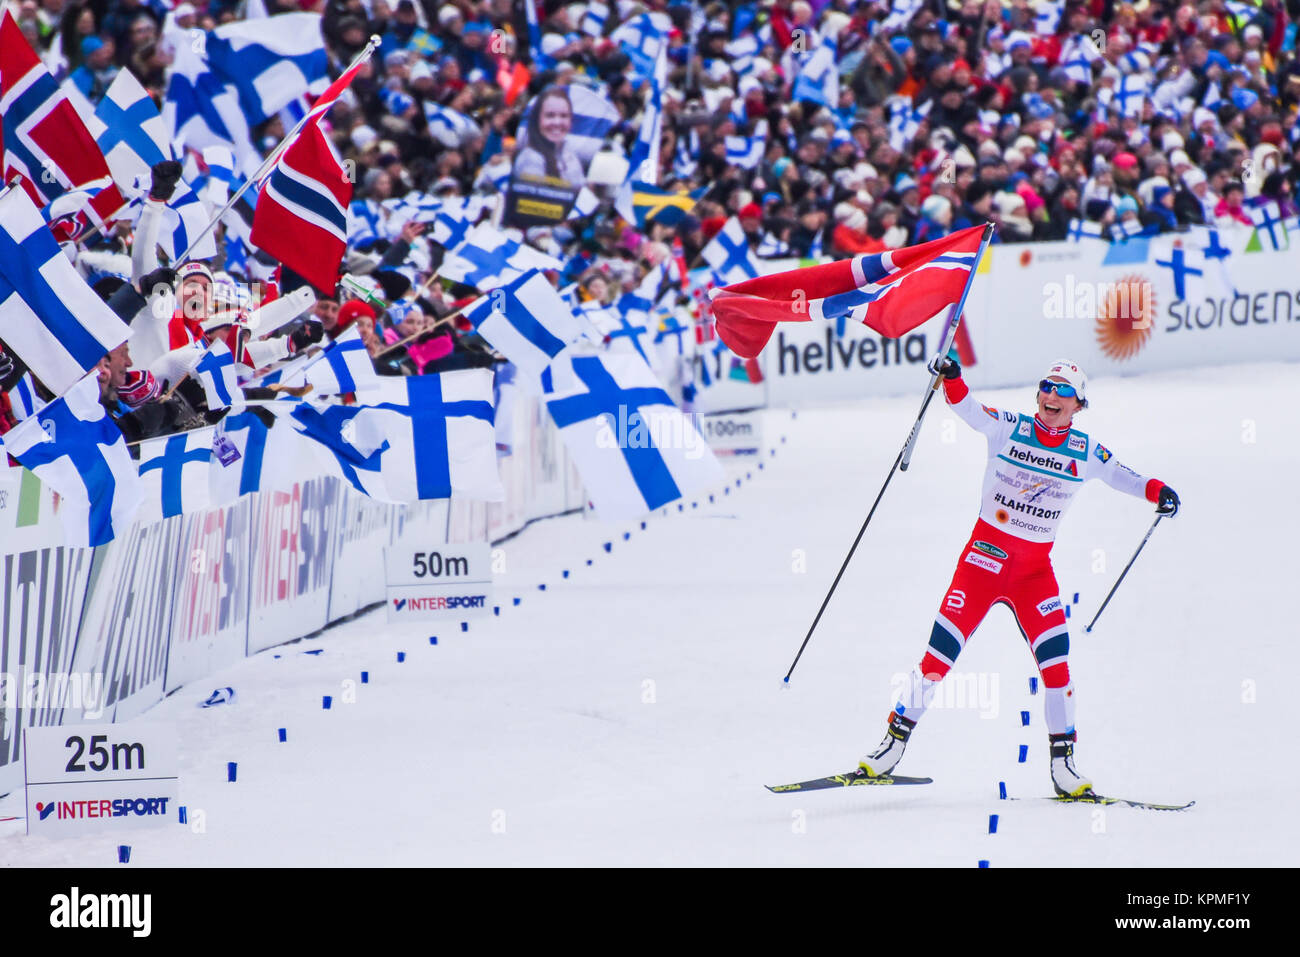 Norvegia Marit Bjorgen celebra dopo la Norvegia ha vinto la staffetta femminile, 2017 del Mondo Sci Nordico campionati, Lahti, Finlandia. In Norvegia il centesimo World Champ medaglia. Foto Stock